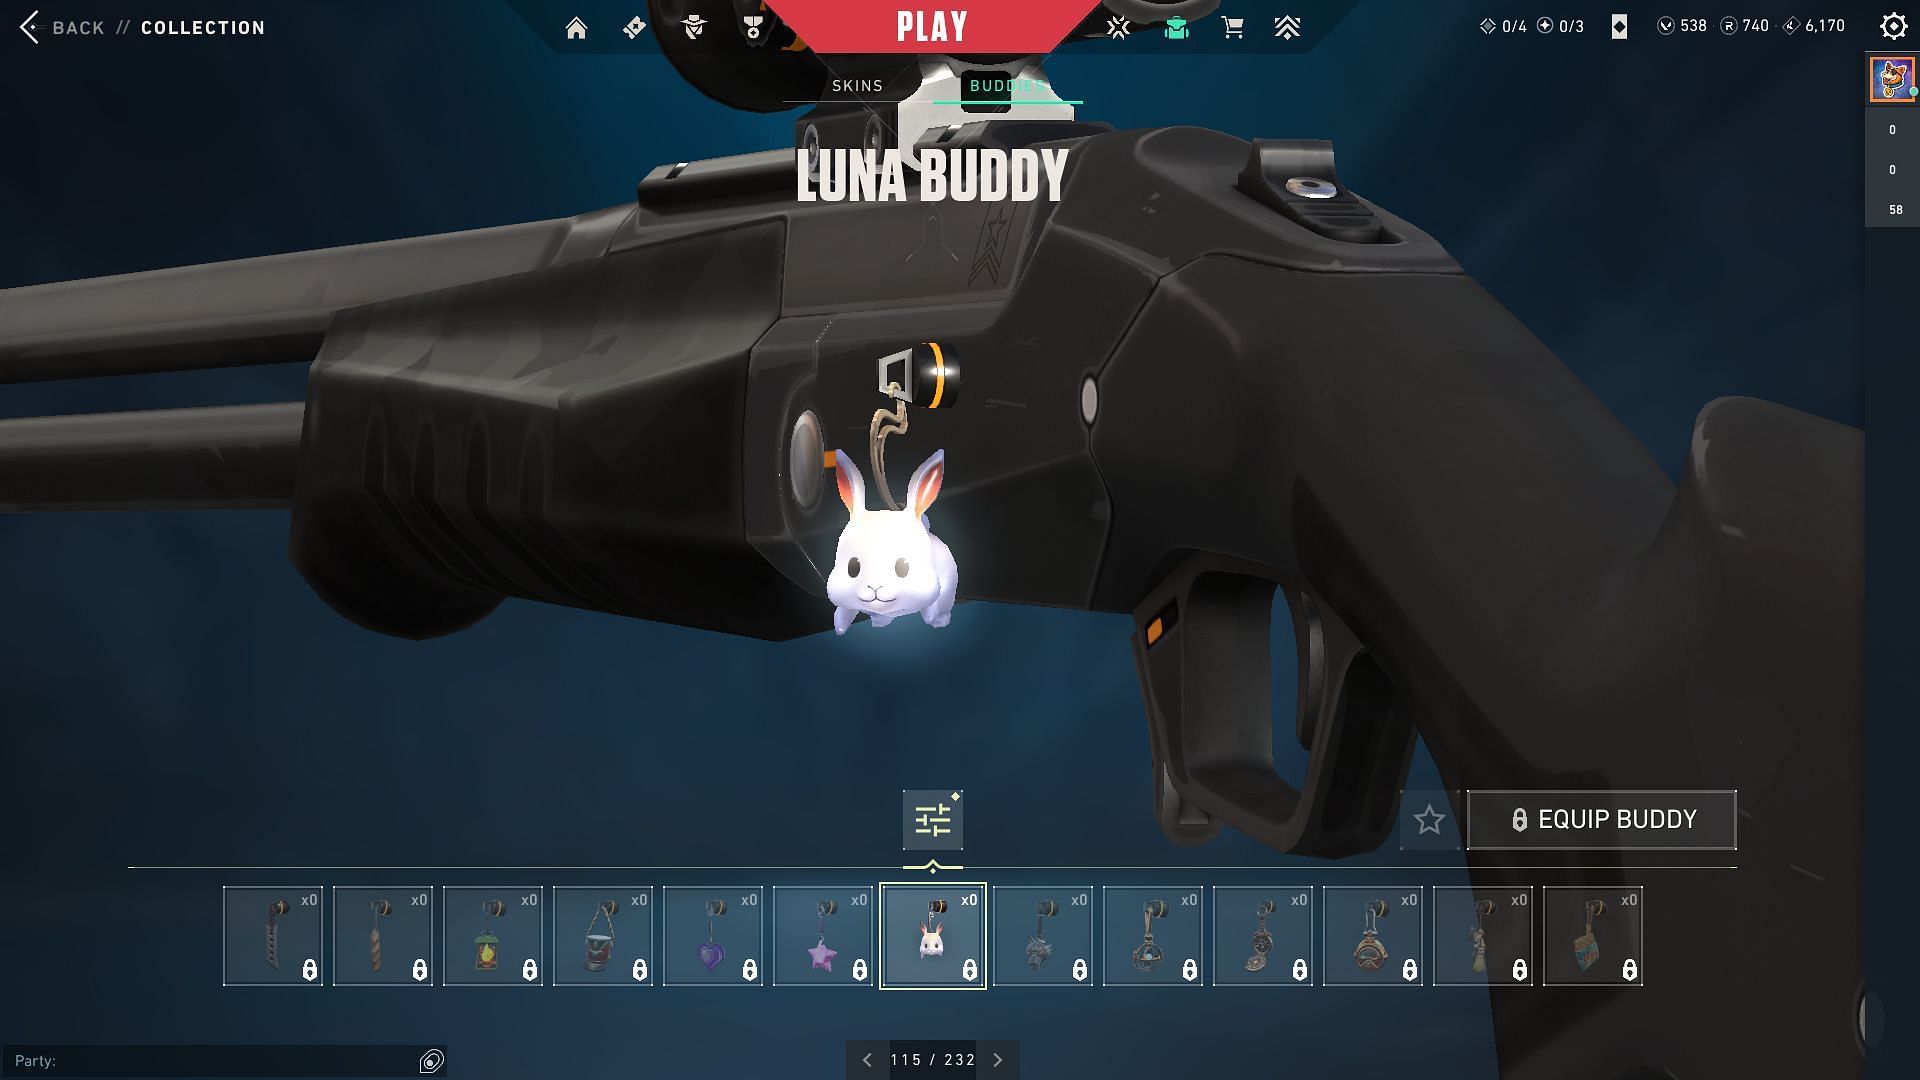 Luna Buddy (Image via Riot Games)